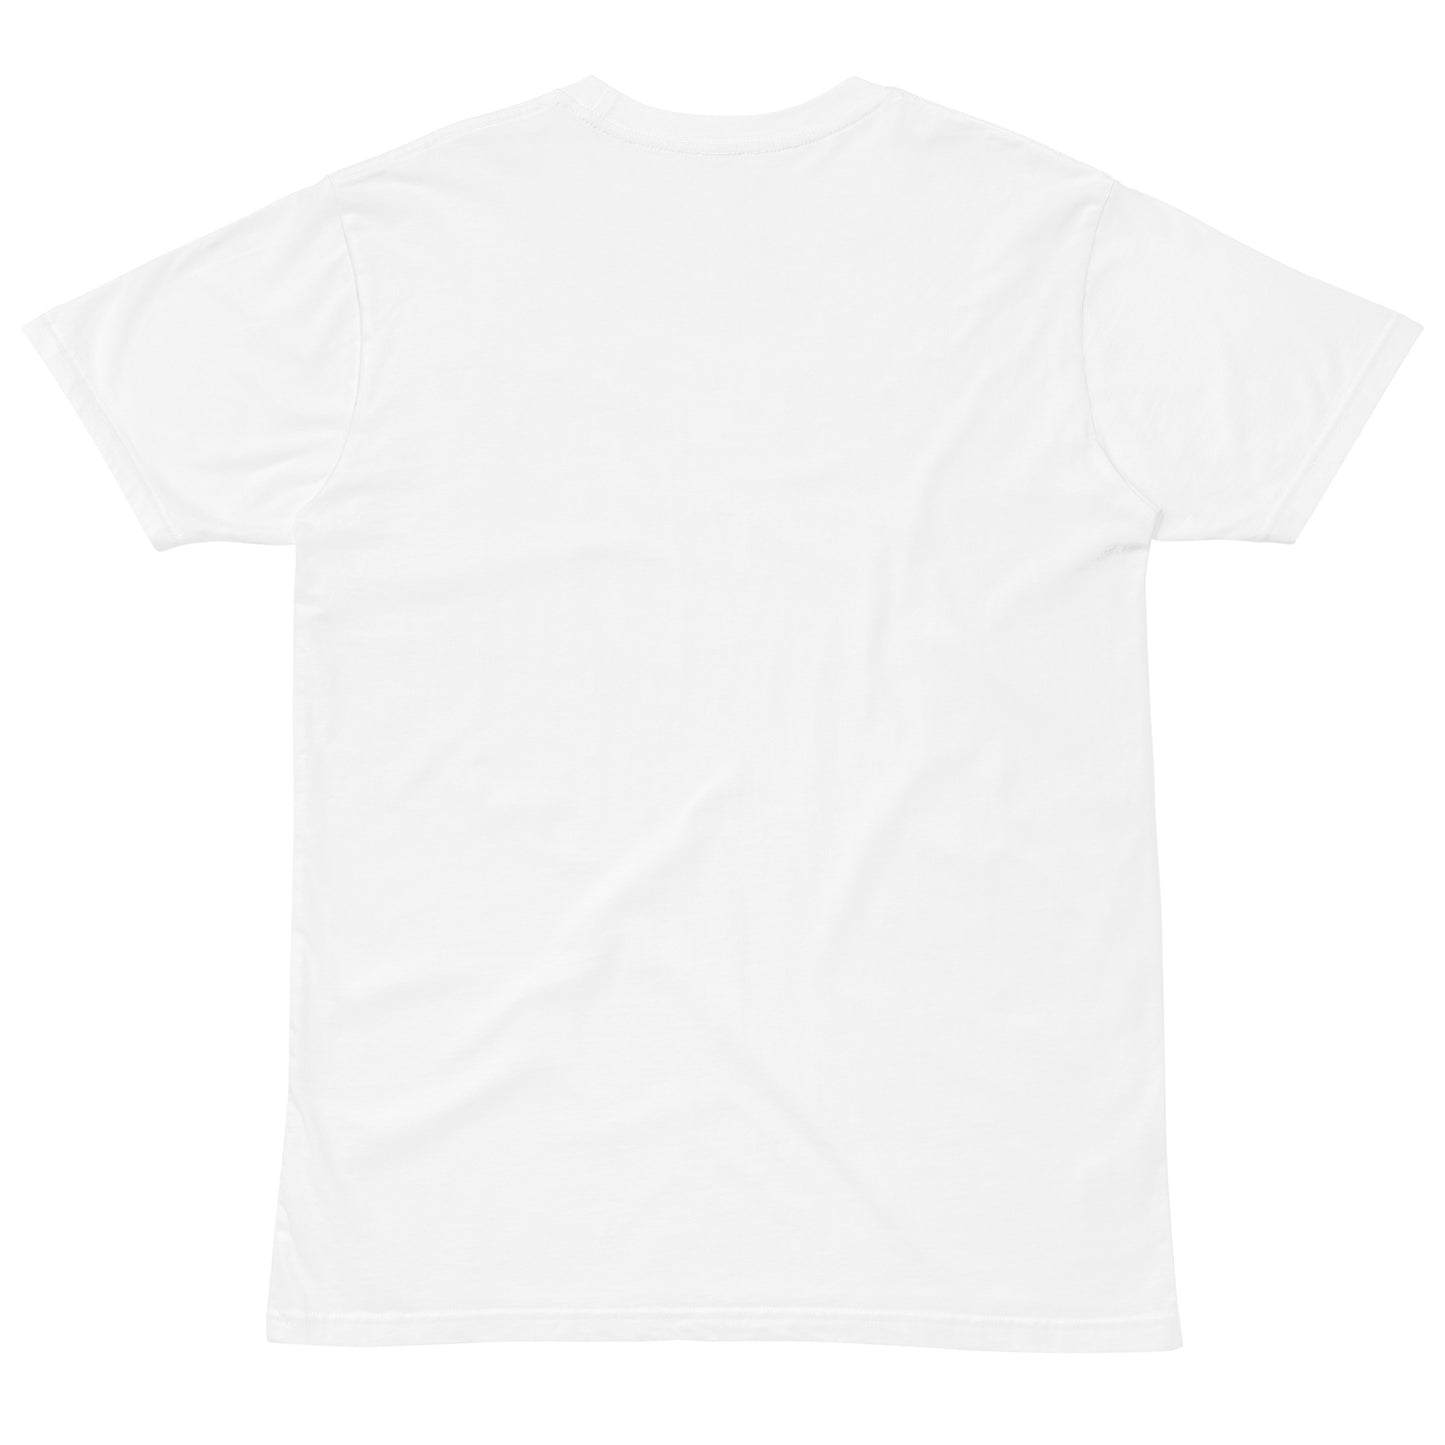 Unisex premium t-shirt - Wave